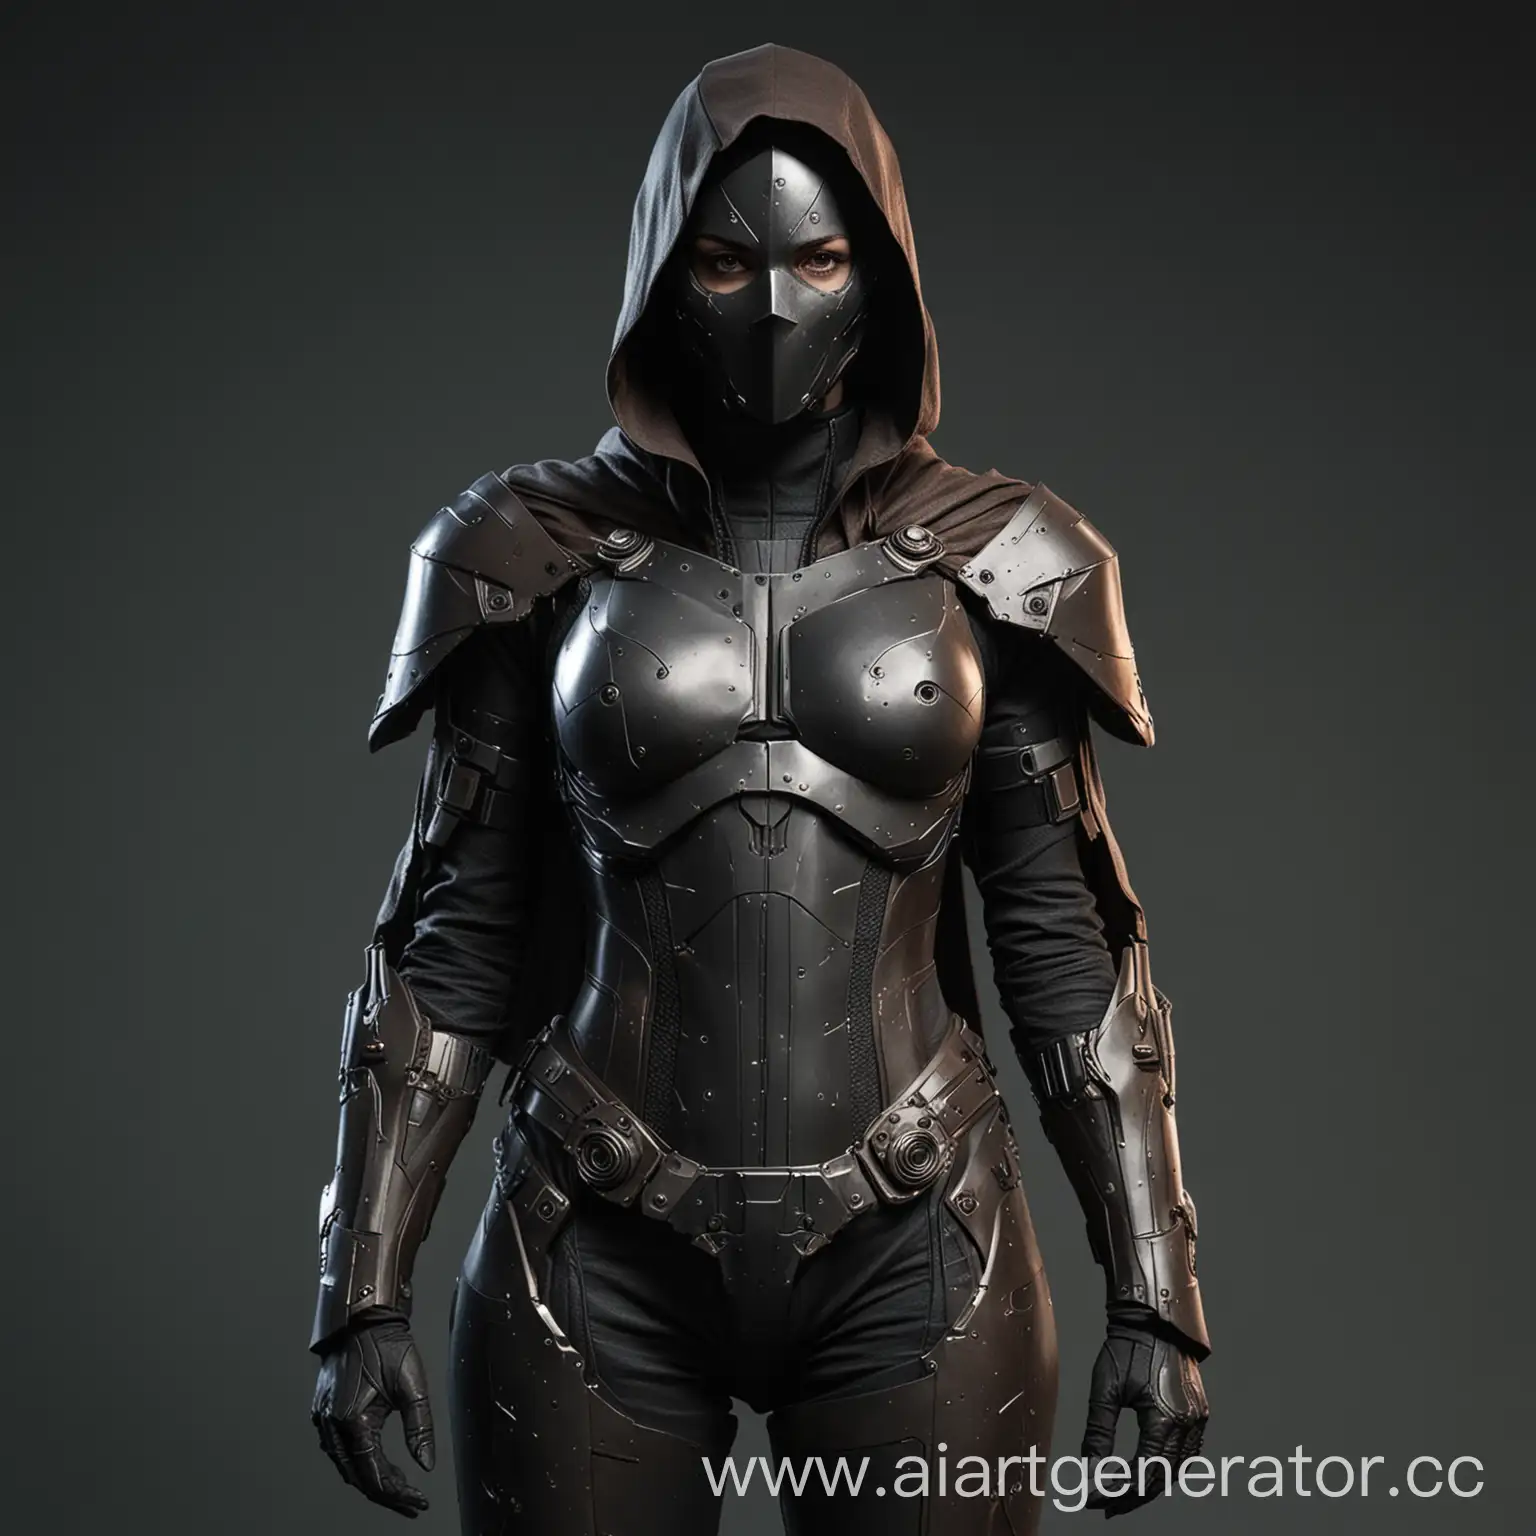 Dark-Technogenic-Armor-Suit-with-Cloak-for-Female-Vigilante